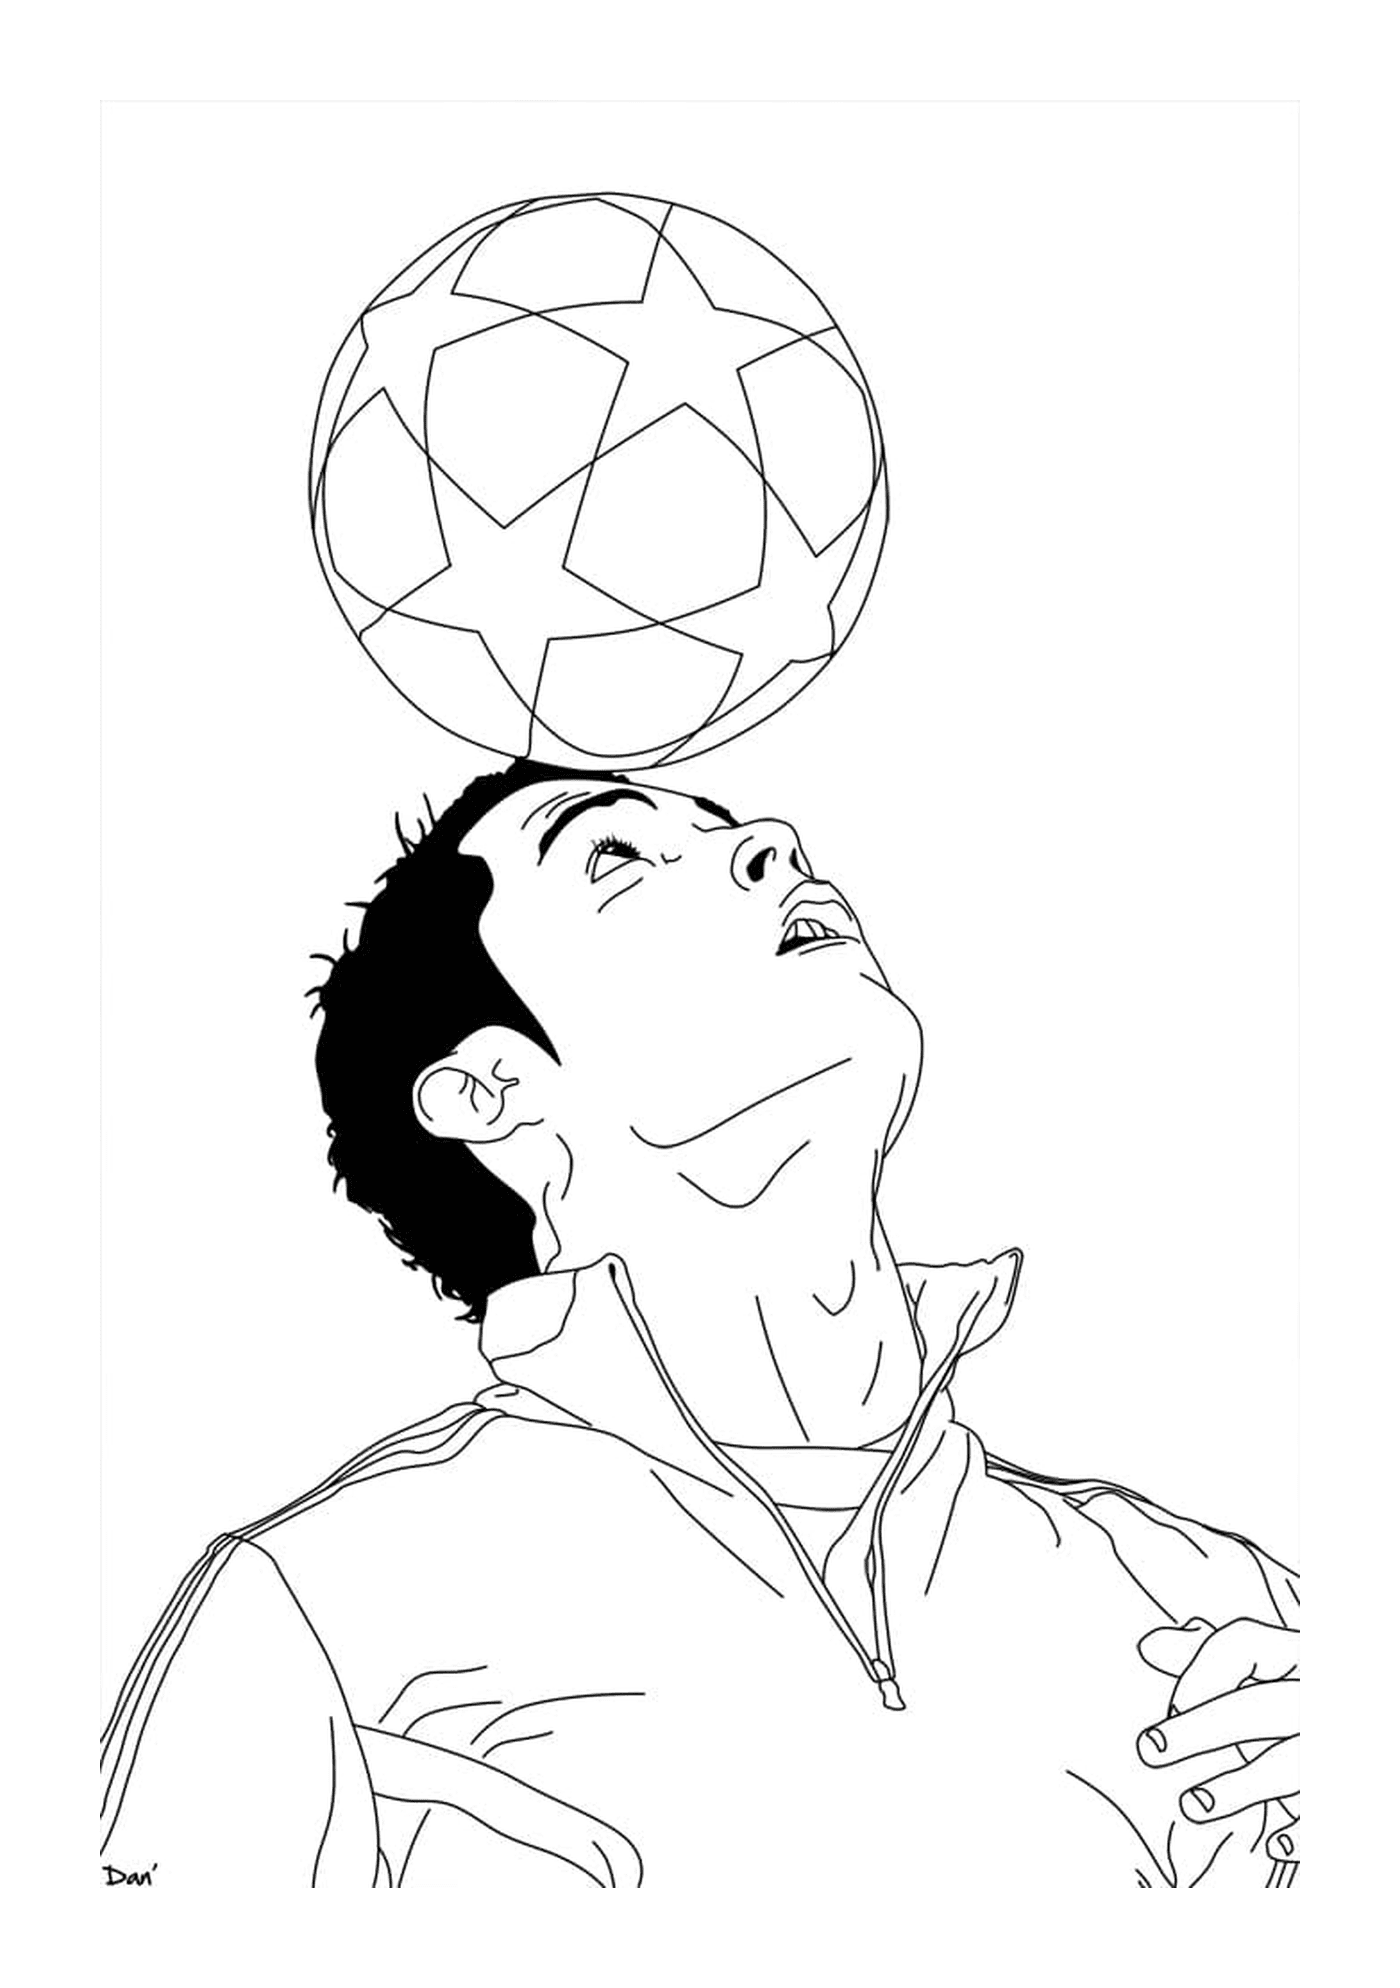   Cristiano Ronaldo jonglant avec un ballon de foot 